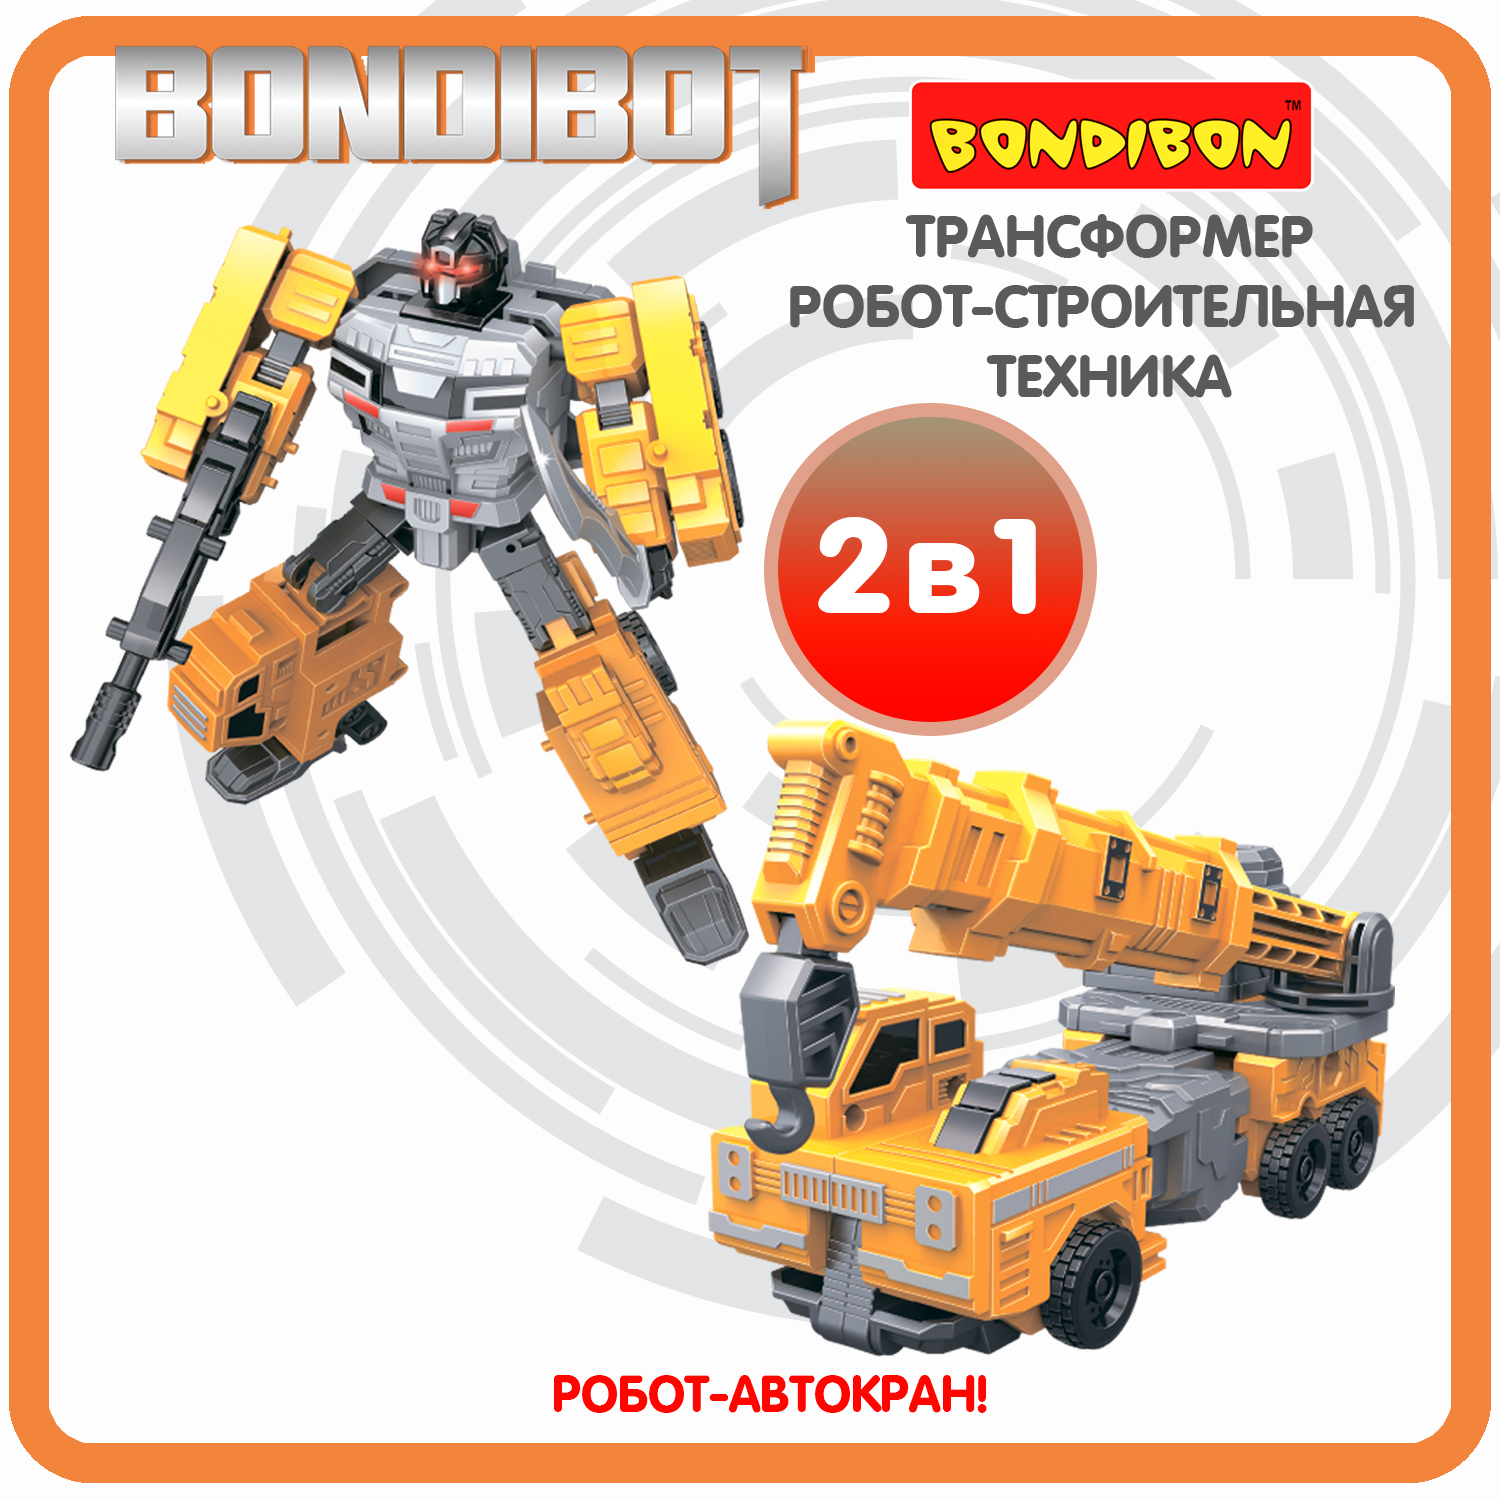 Трансформер робот-строительная техника, 2в1 BONDIBOT Bondibon, автокран / ВВ6050 трансформер робот строительная техника 2в1 bondibot bondibon бульдозер вв6053